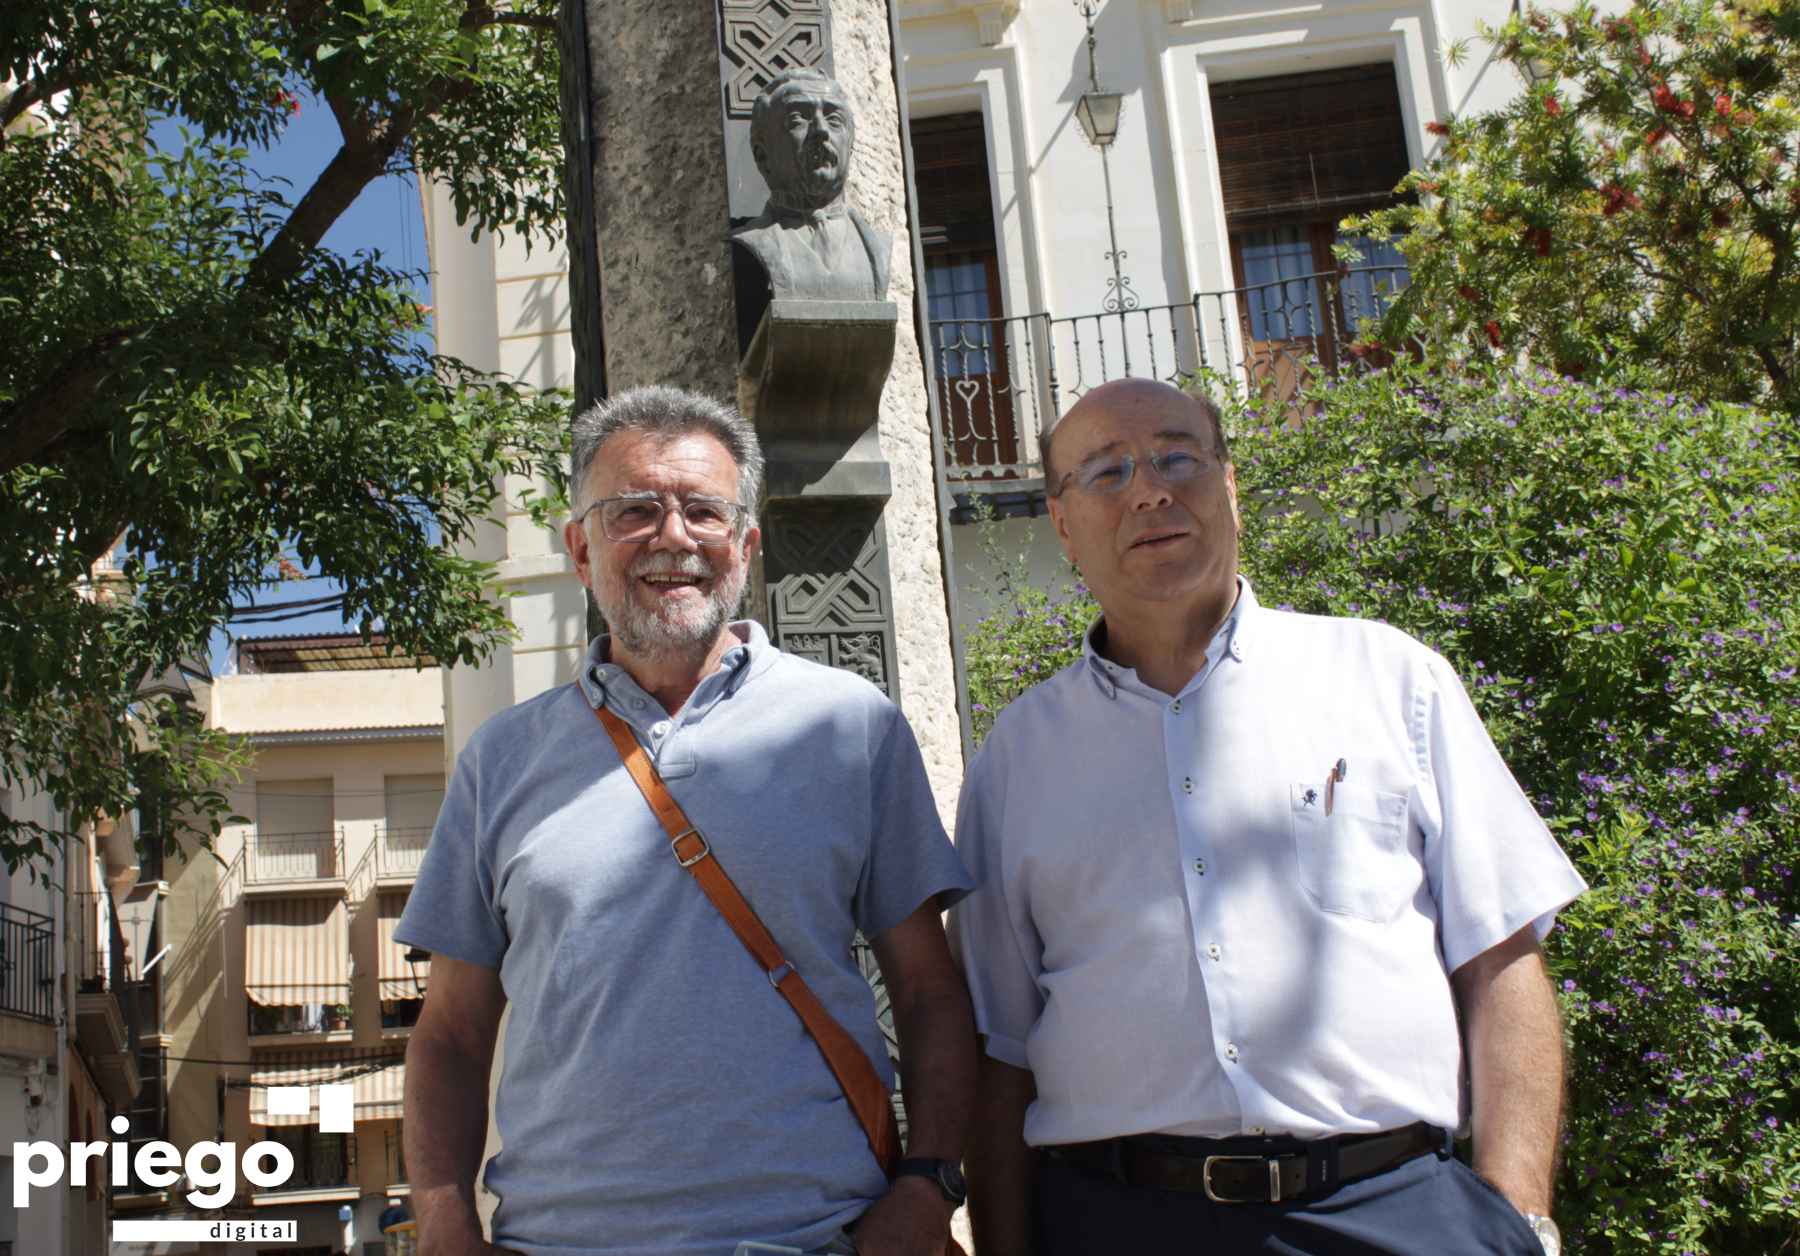 José Luis Casas y Francisco Durán ante el monumento dedicado a Niceto Alcalá-Zamora en la plaza de la Constitución.